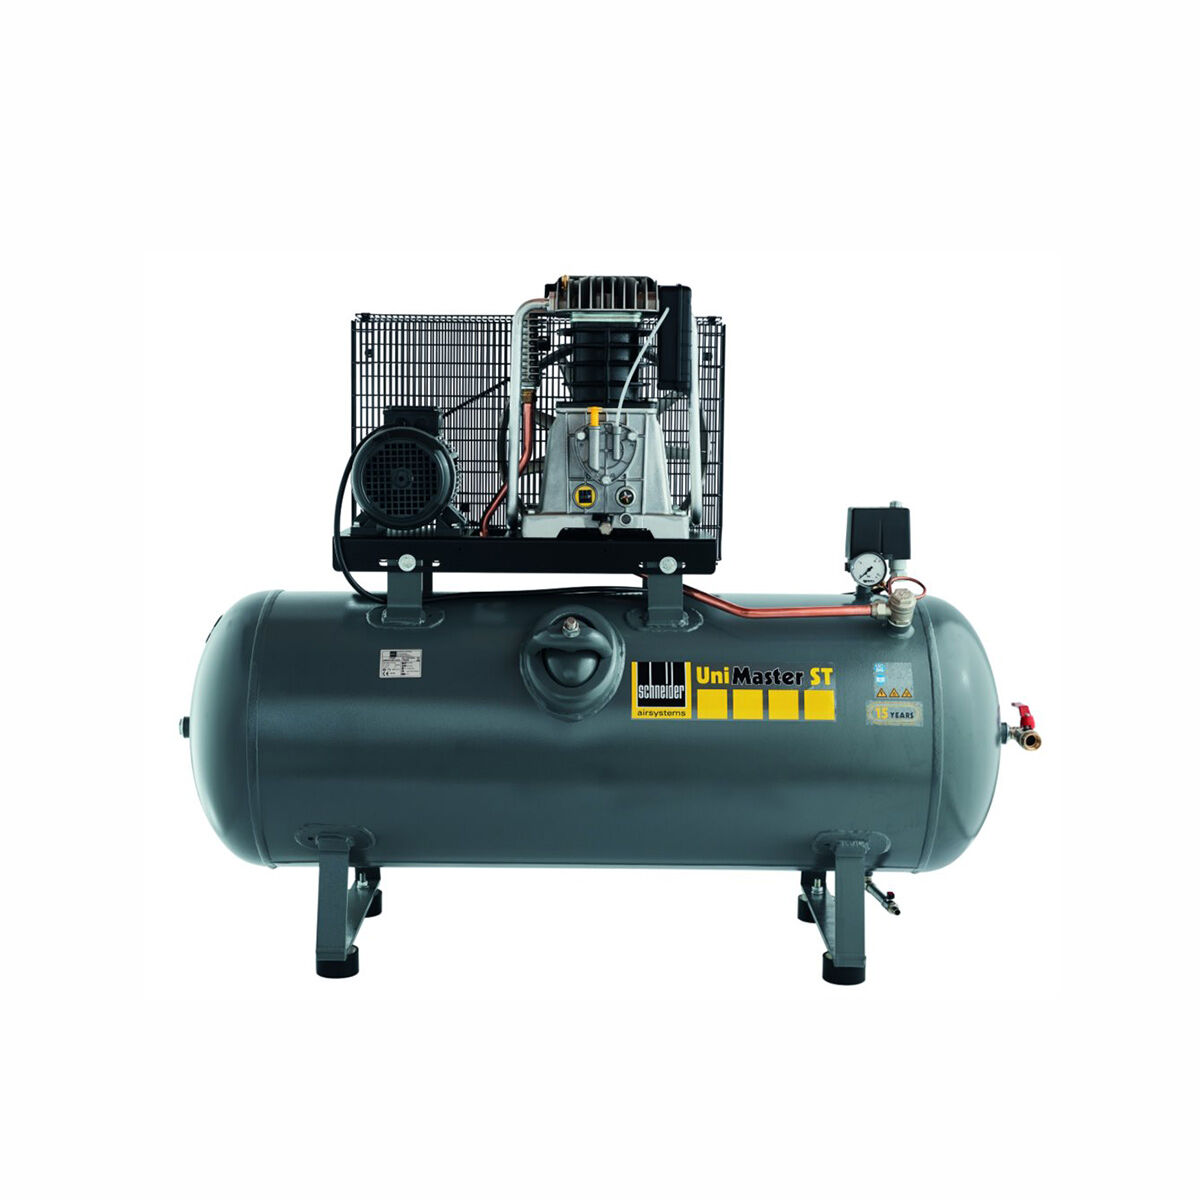 Schneider-Kompressor UNM STL 1000-15-270 C 1121570218